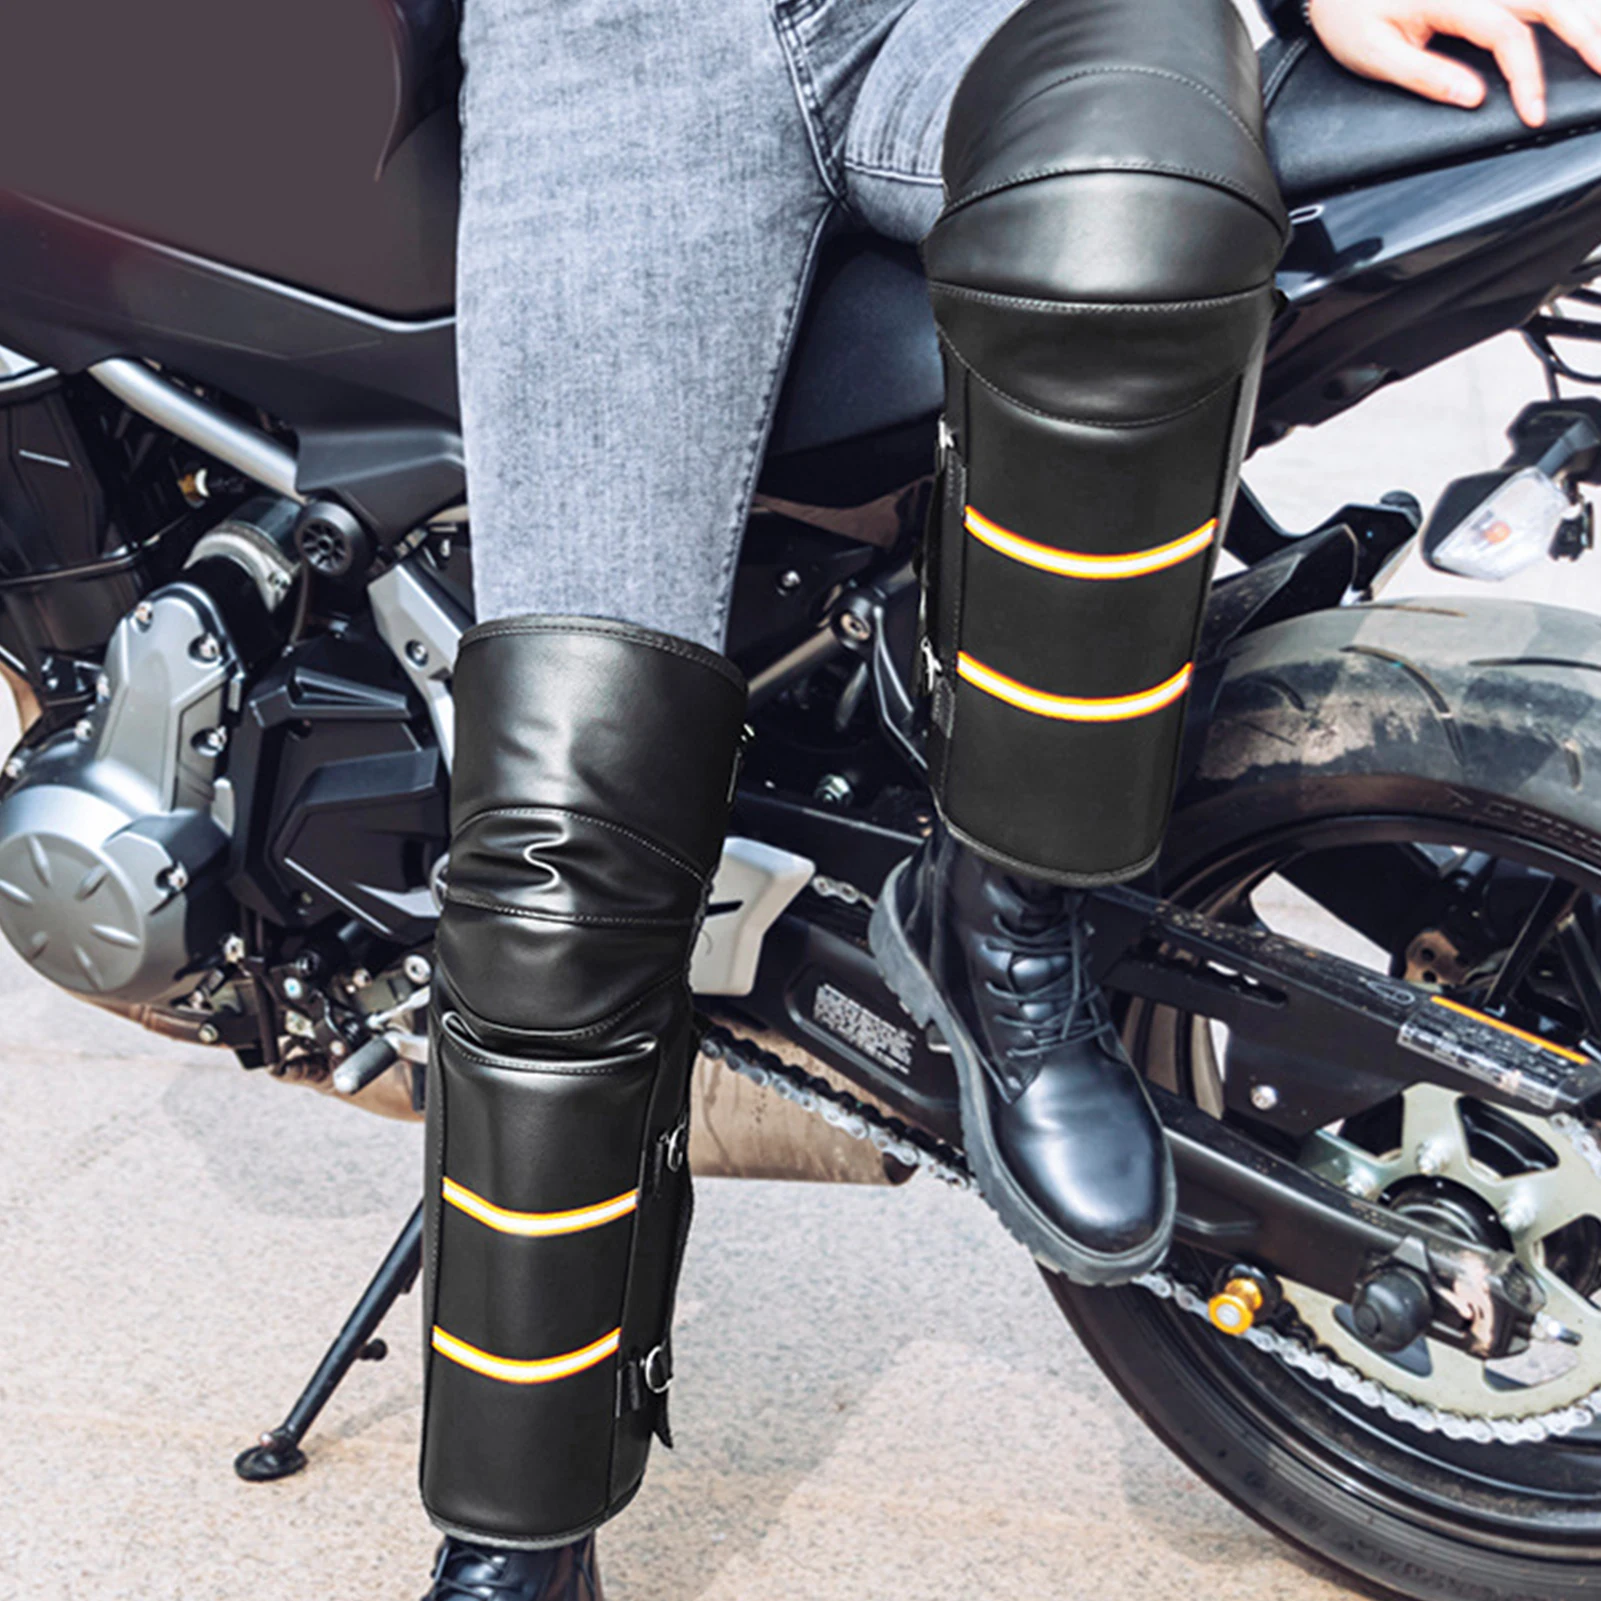 

Высоко-Класс мотоциклетные скутеры велосипед ноги более теплое колено колодки прочный длинный сжатия ног рукава с подтяжками, с защитой от ветра наколенник коврик